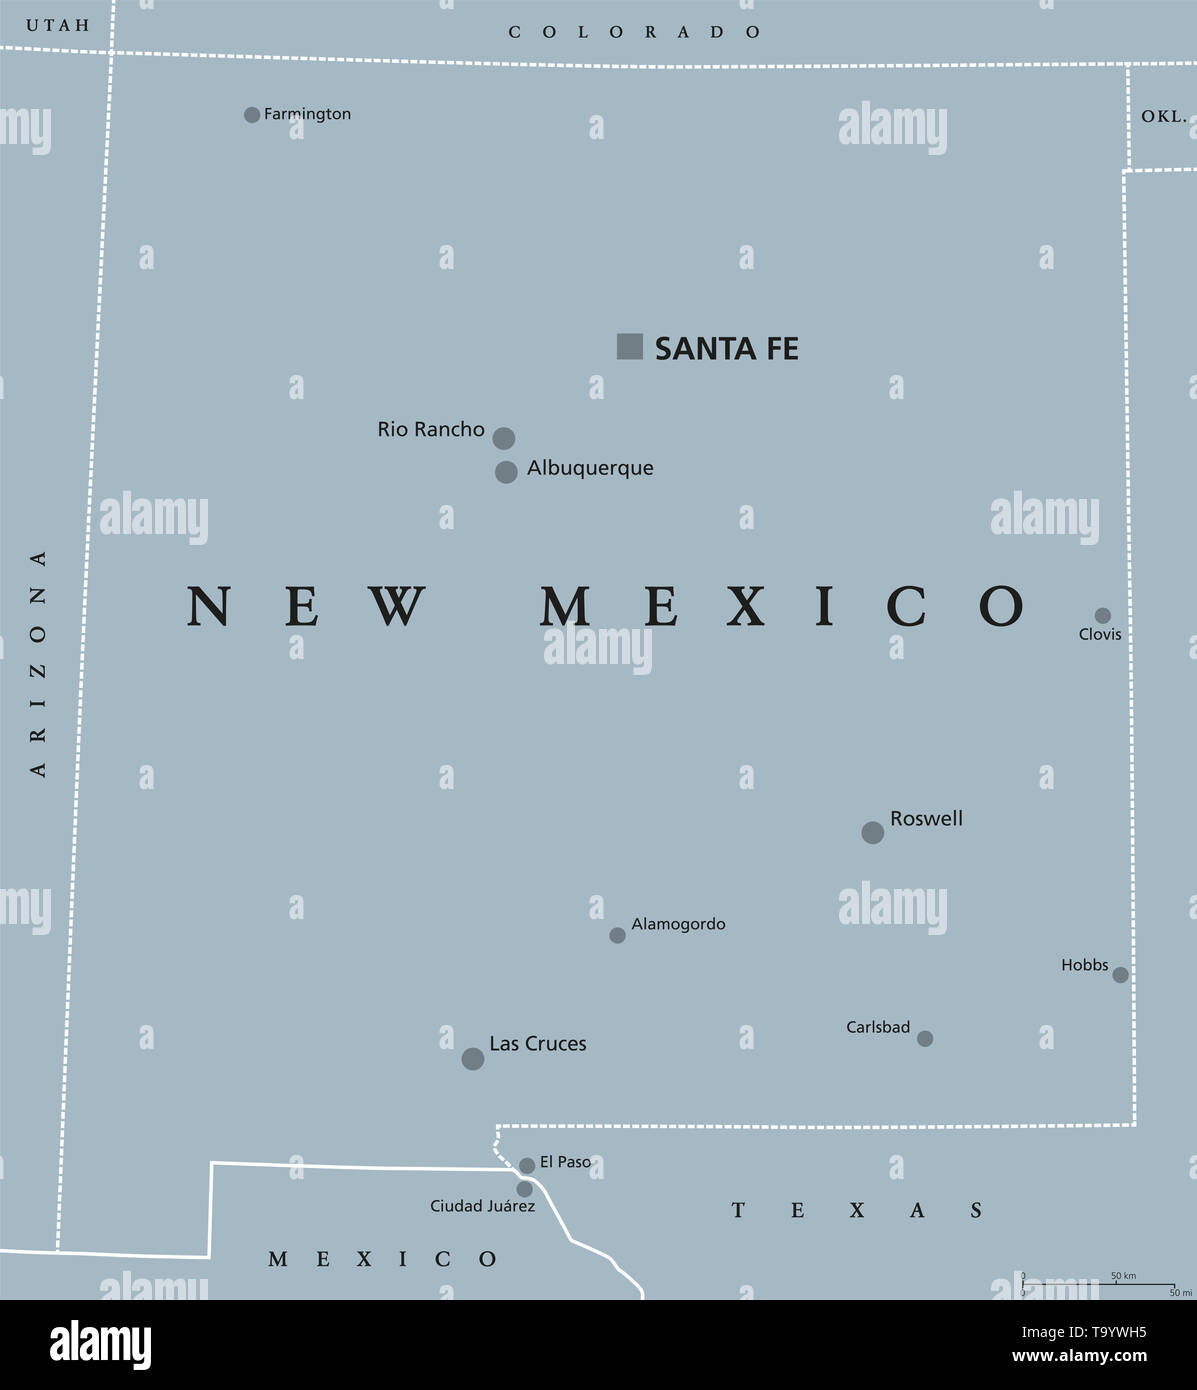 New York, politische Karte, mit Hauptstadt Santa Fe, die größten Städte und Grenzen. Staat im Südwesten der Vereinigten Staaten von Amerika. Stockfoto